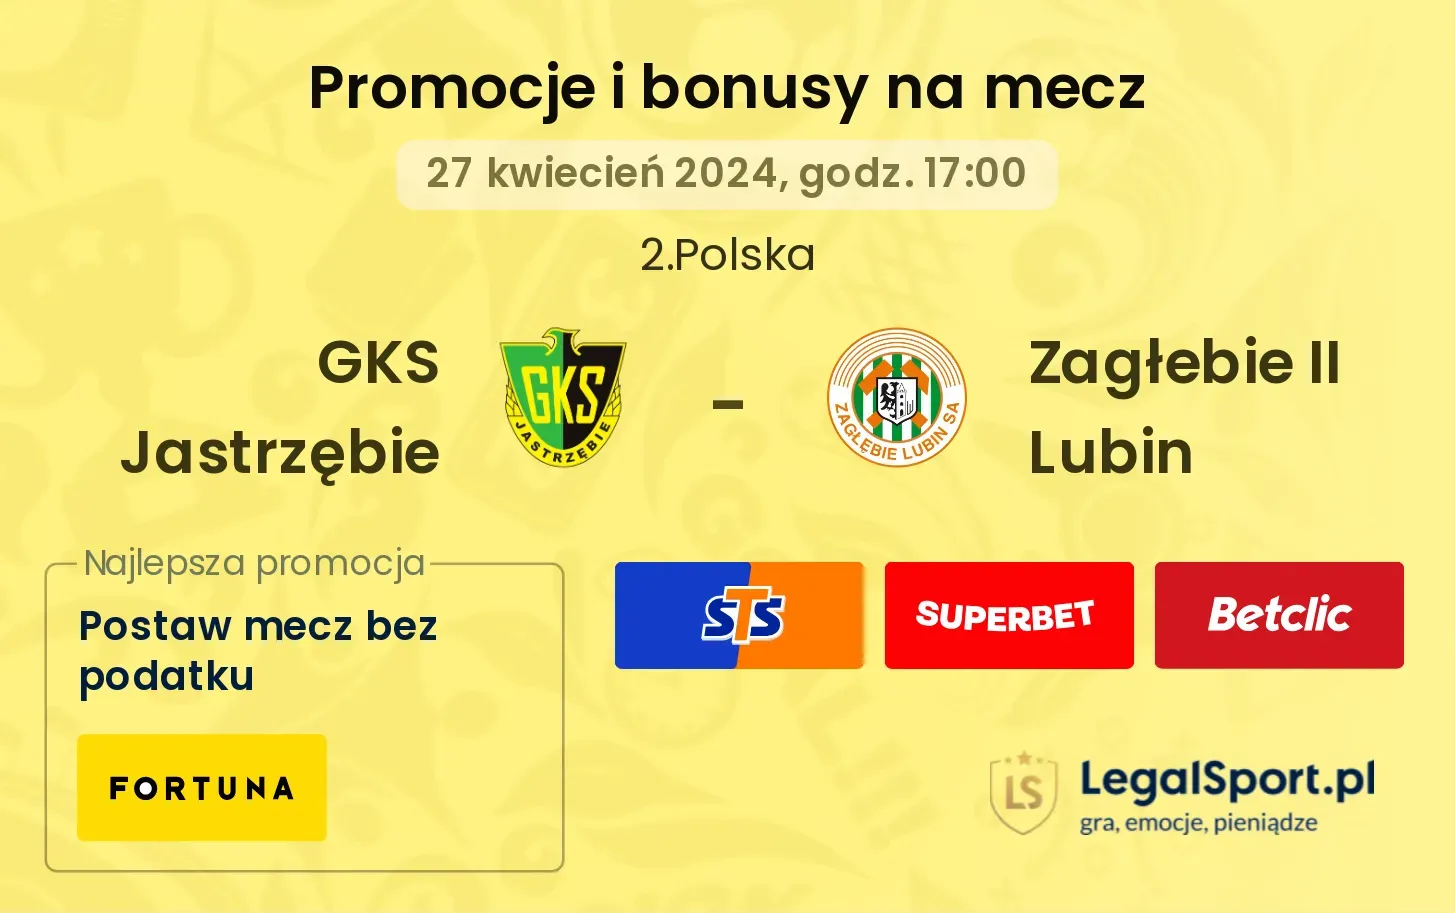 GKS Jastrzębie - Zagłebie II Lubin promocje bonusy na mecz